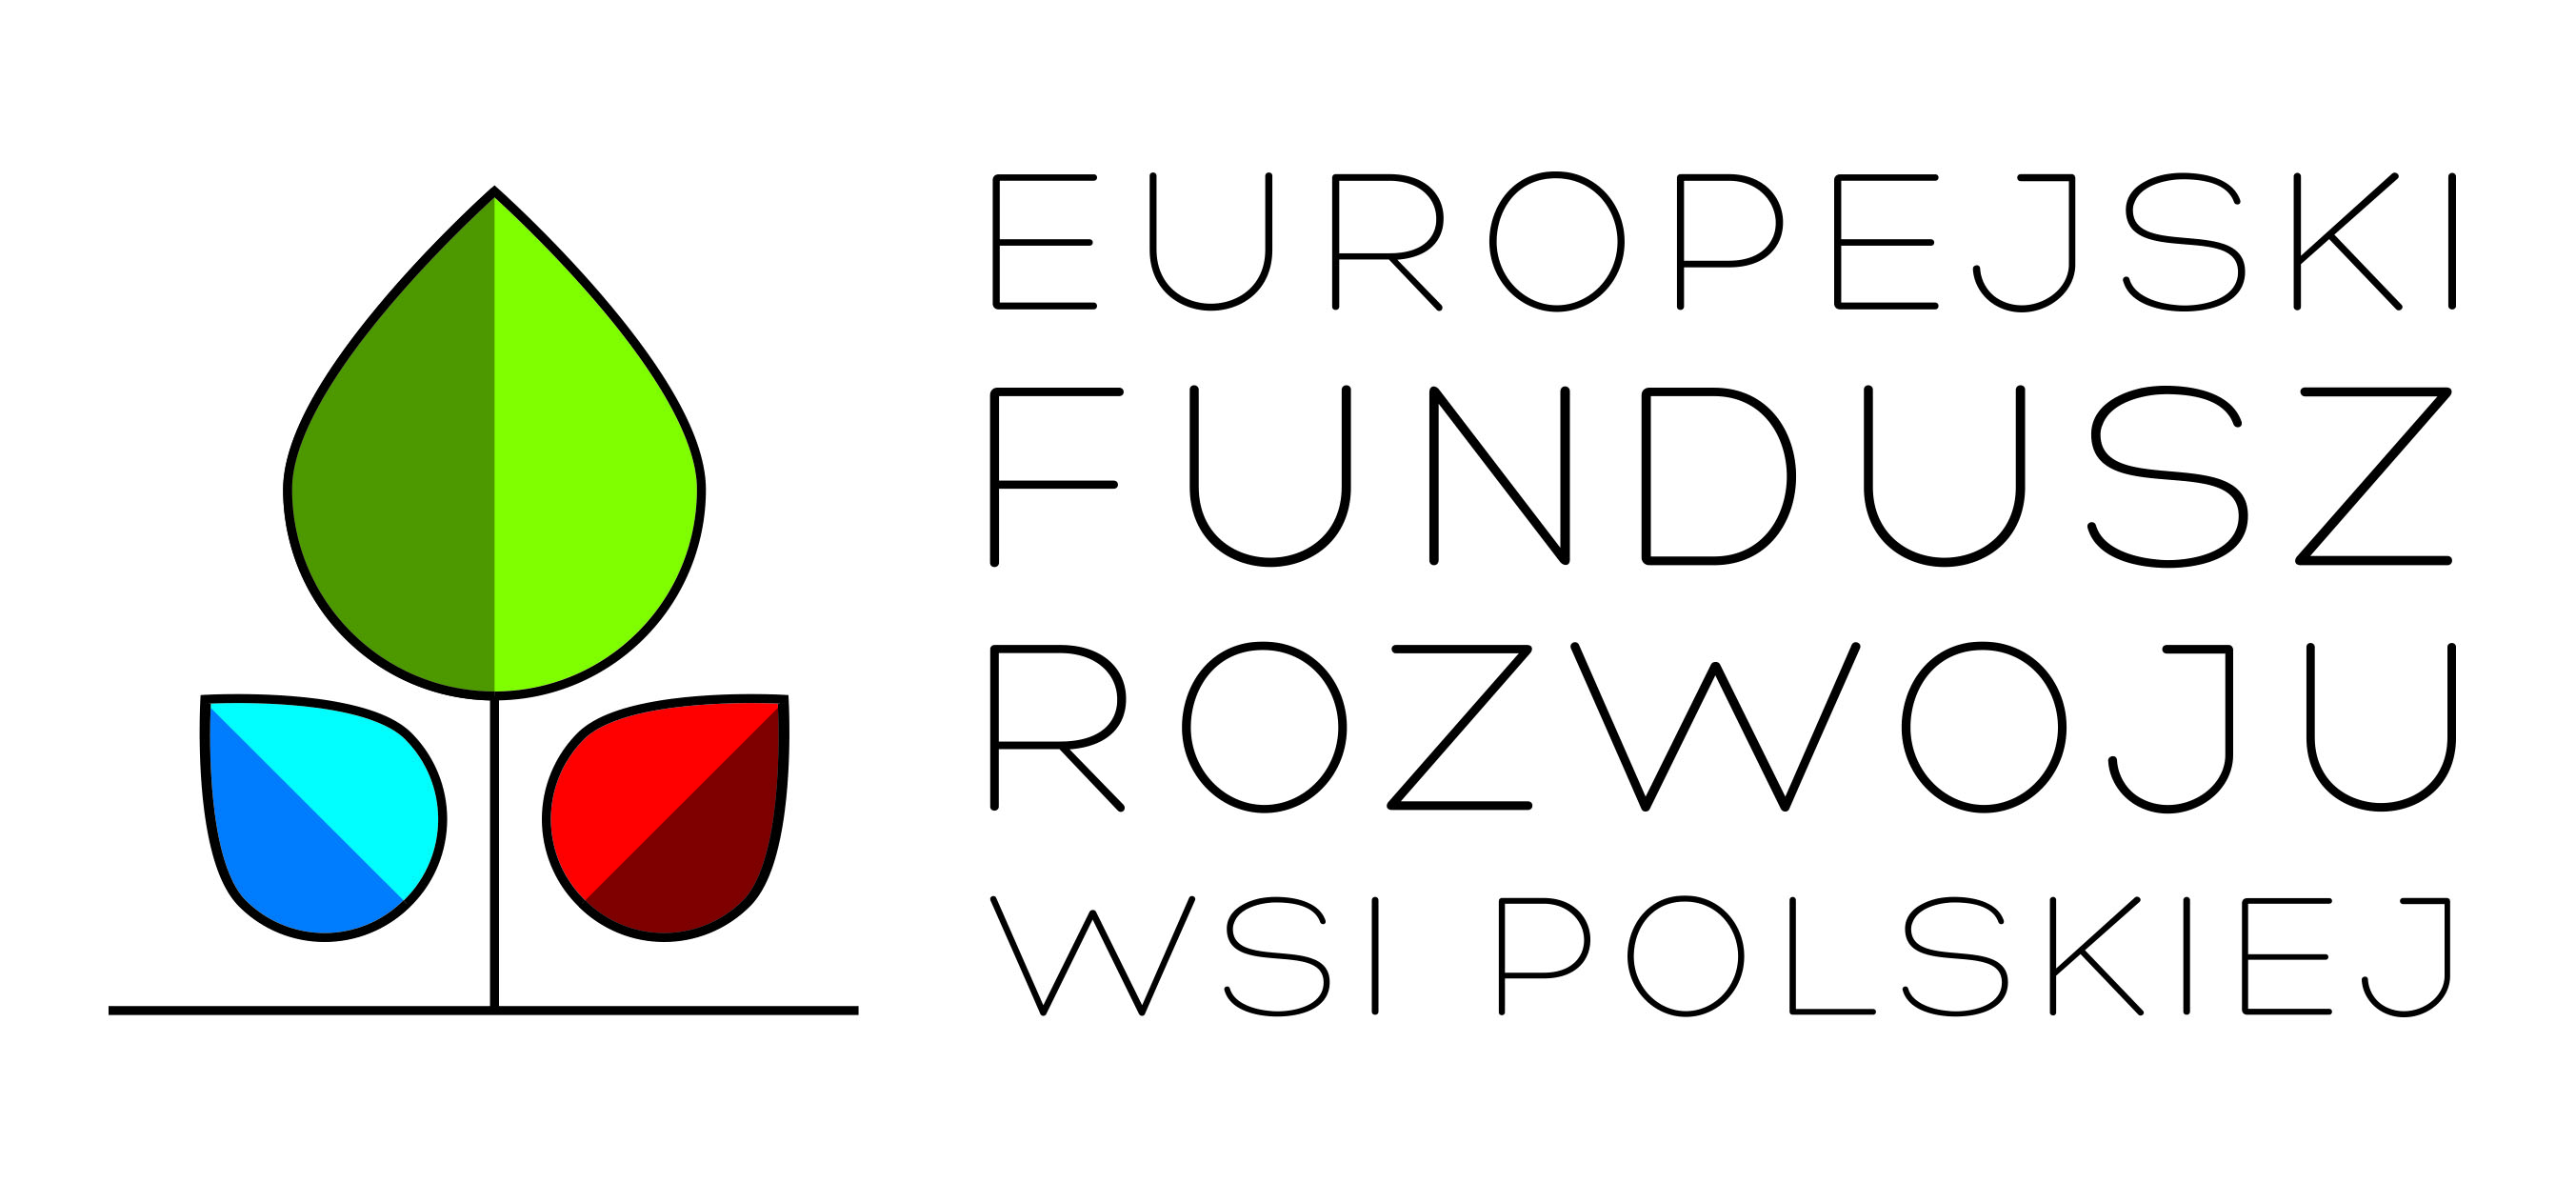 Europejski Fundusz Rozwoju Wsi Polskich